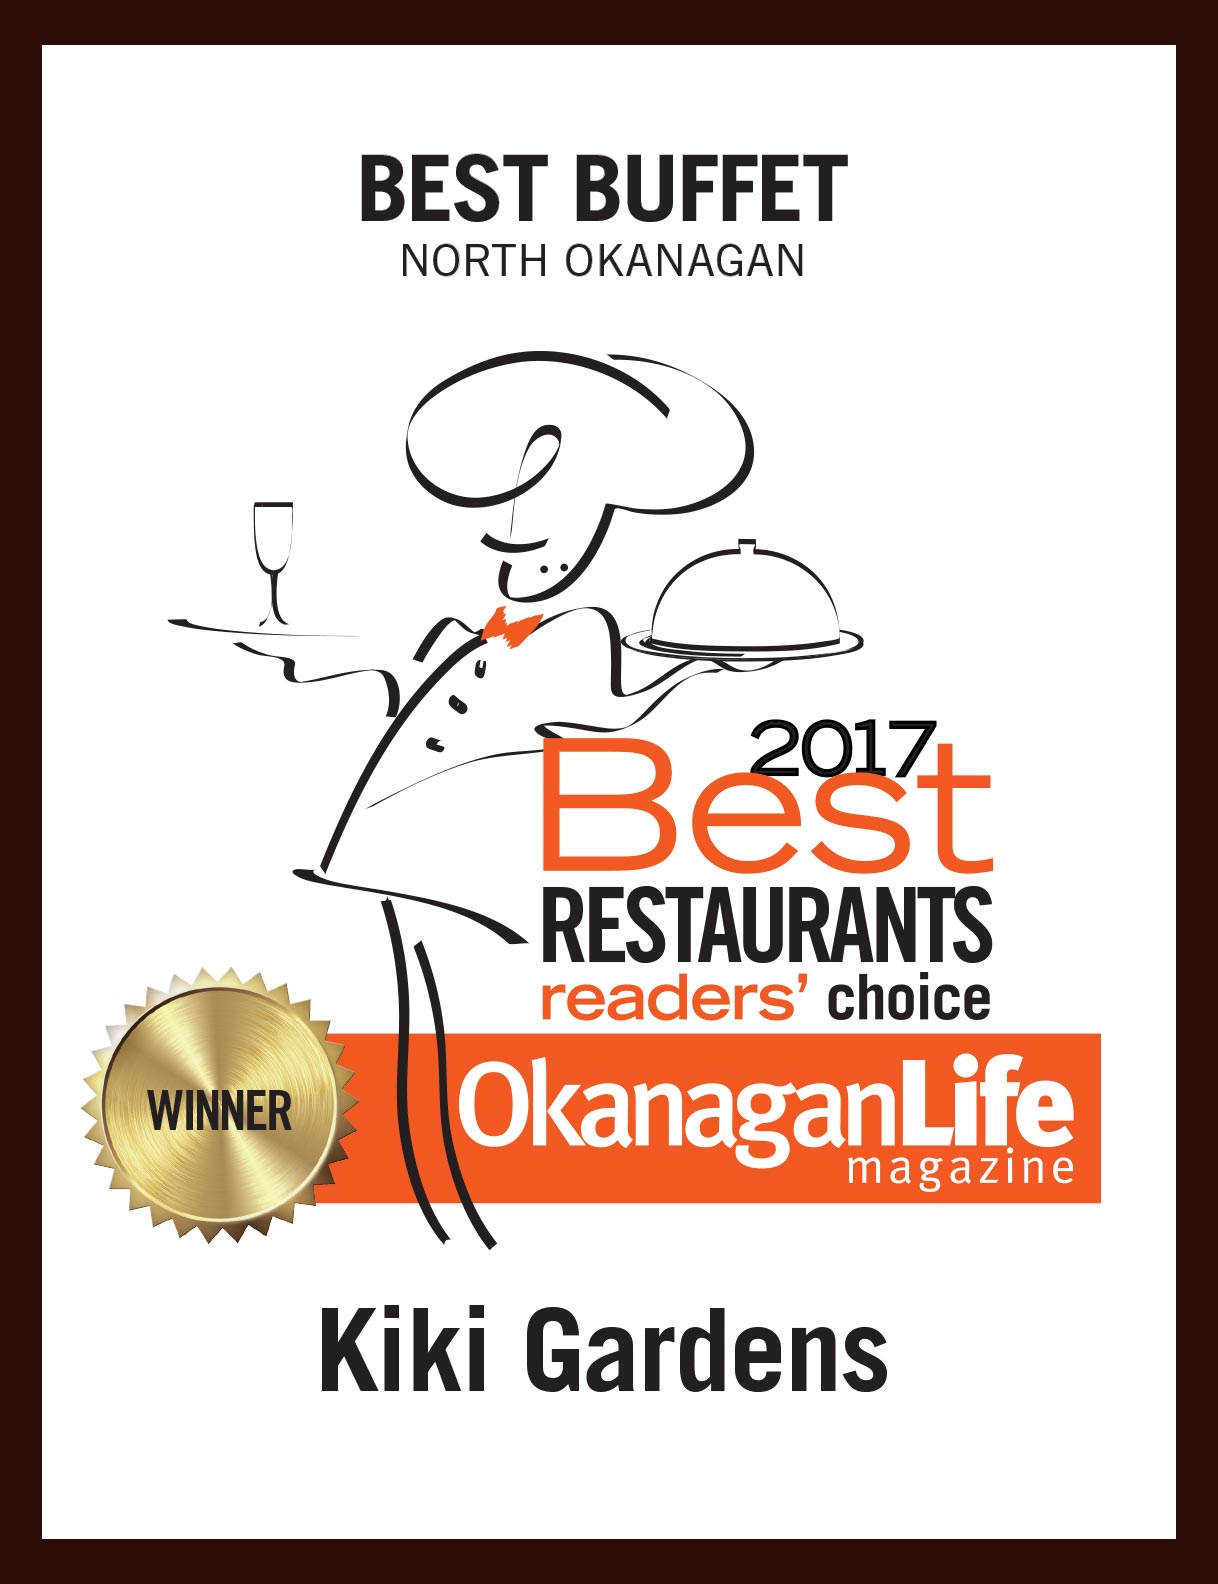 Best Restaurants of the Okanagan - 2017 Best Buffet in the North Okanagan